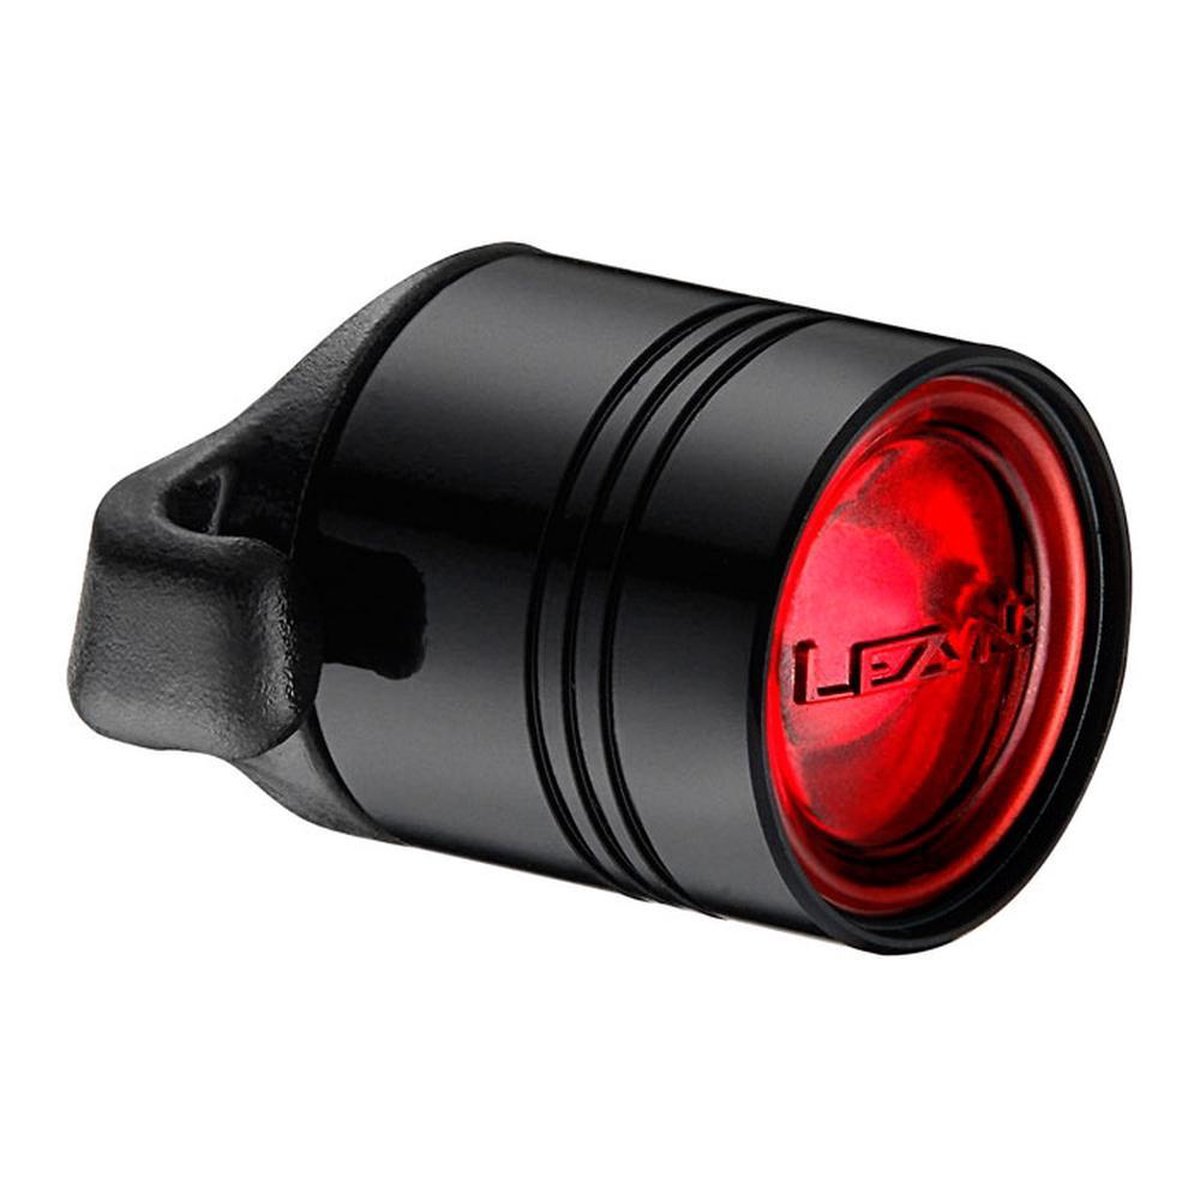 Lezyne Femto Drive Front Koplamp – Fietslamp – Fiets koplamp – Fiets verlichting – Veiligheidslampje – 4 knipperstanden – 7 lumen - Zwart - Lezyne